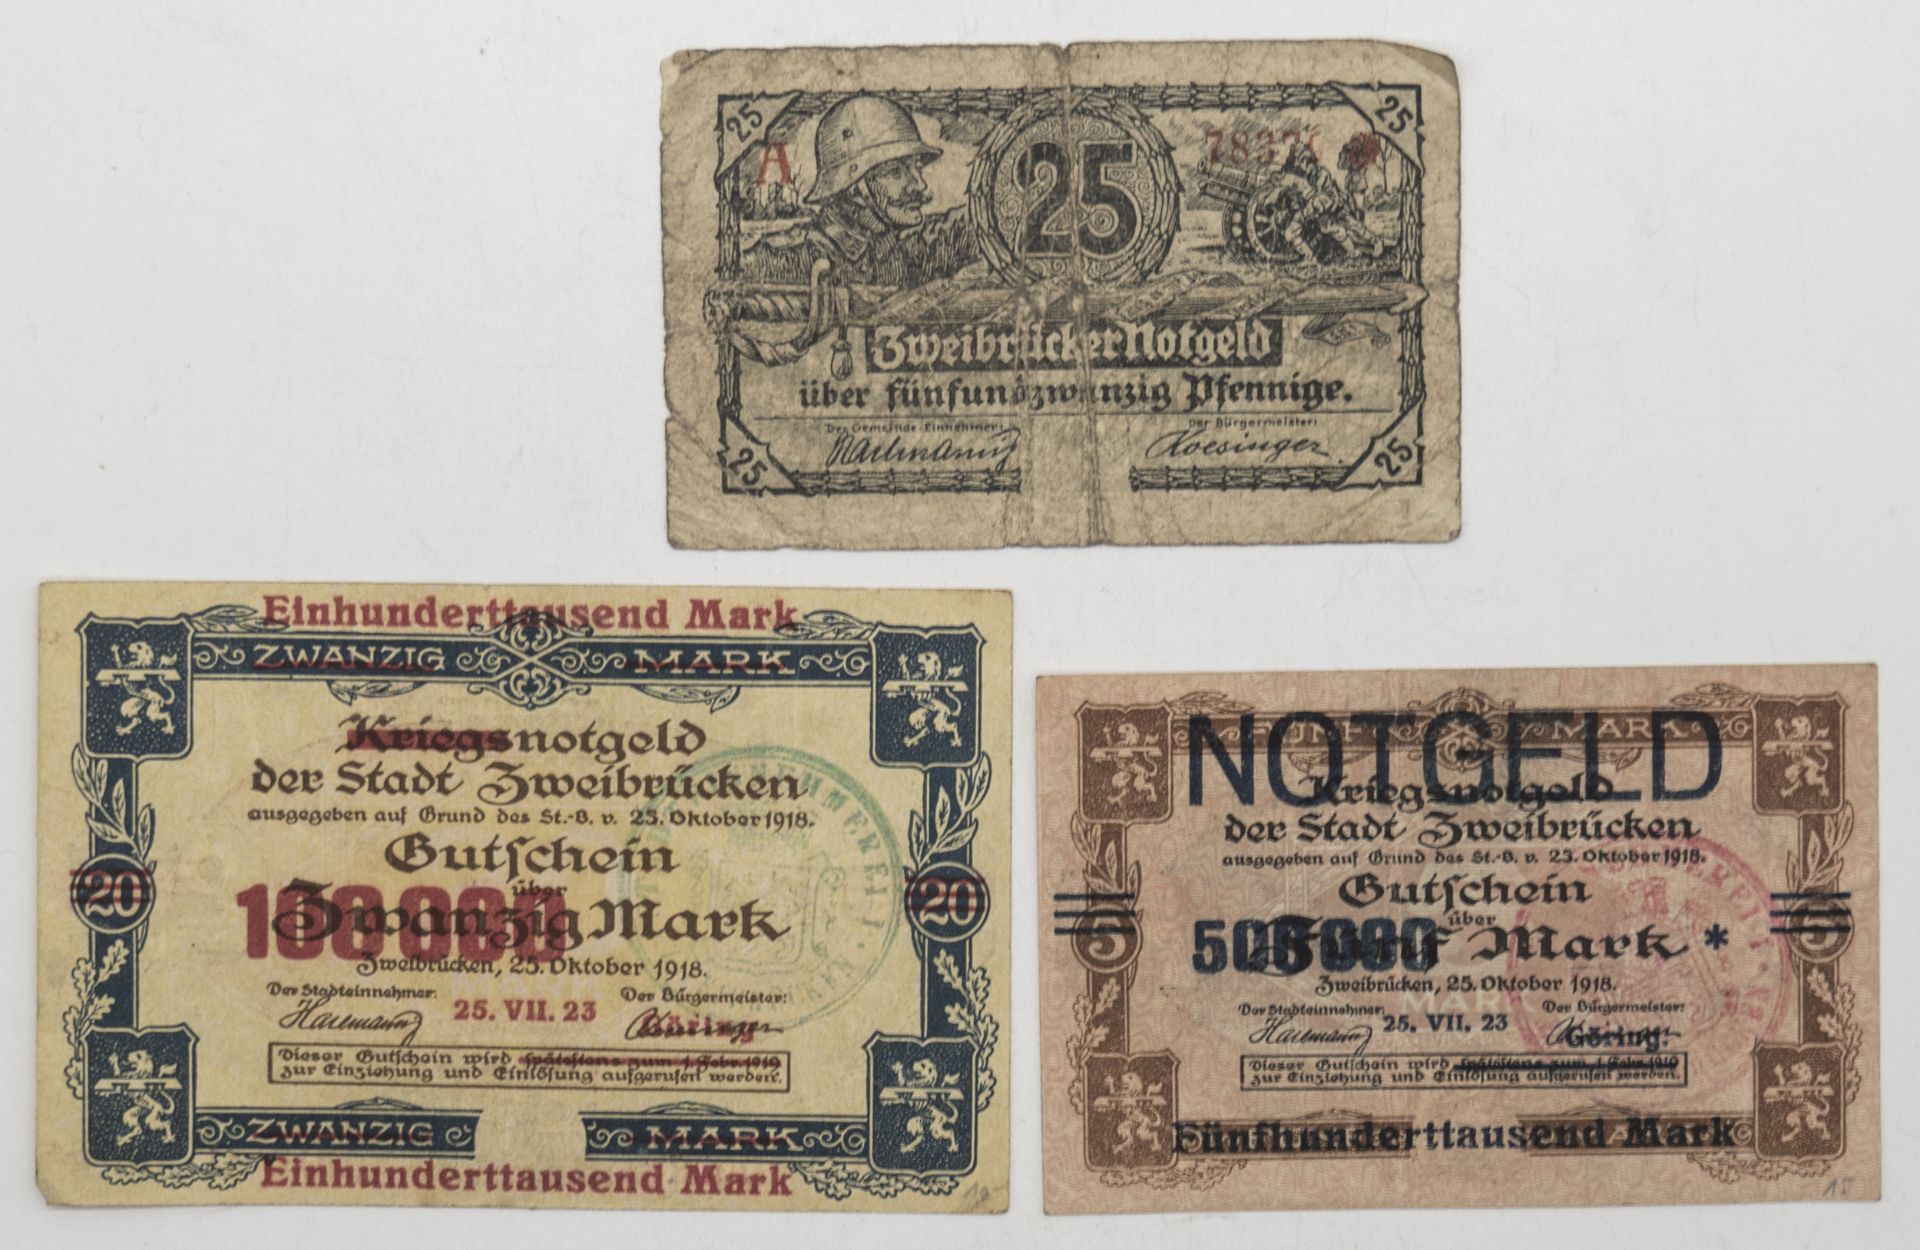 Notgeld / Kriegsnotgeld der Stadt Zweibrücken 1918/19. Teilweise überdruckt. Erhaltung: ss - s.